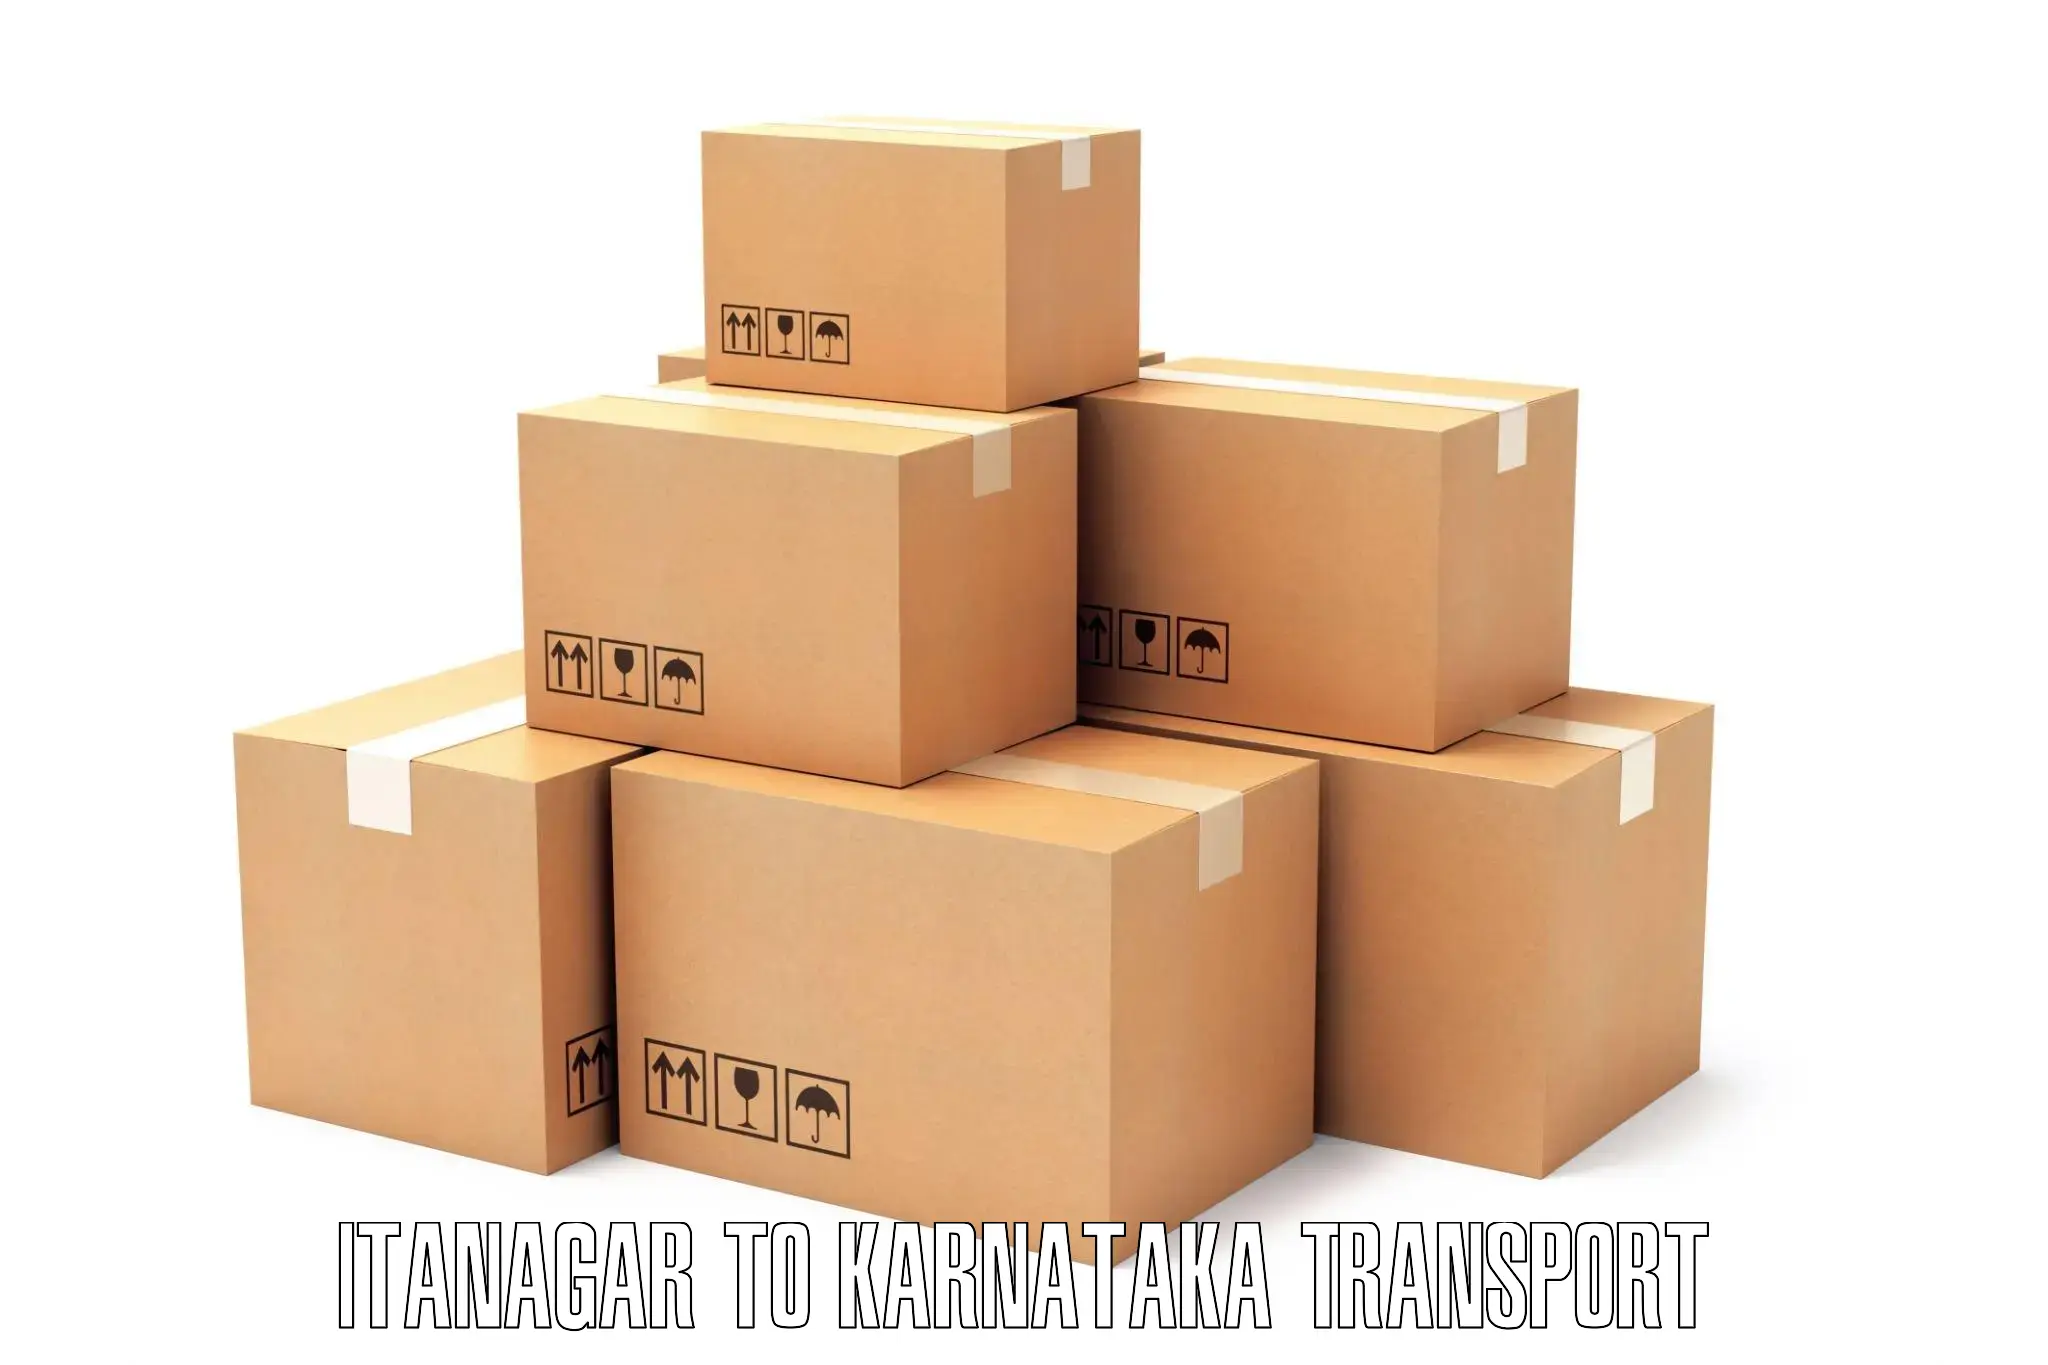 Furniture transport service Itanagar to Mudhol